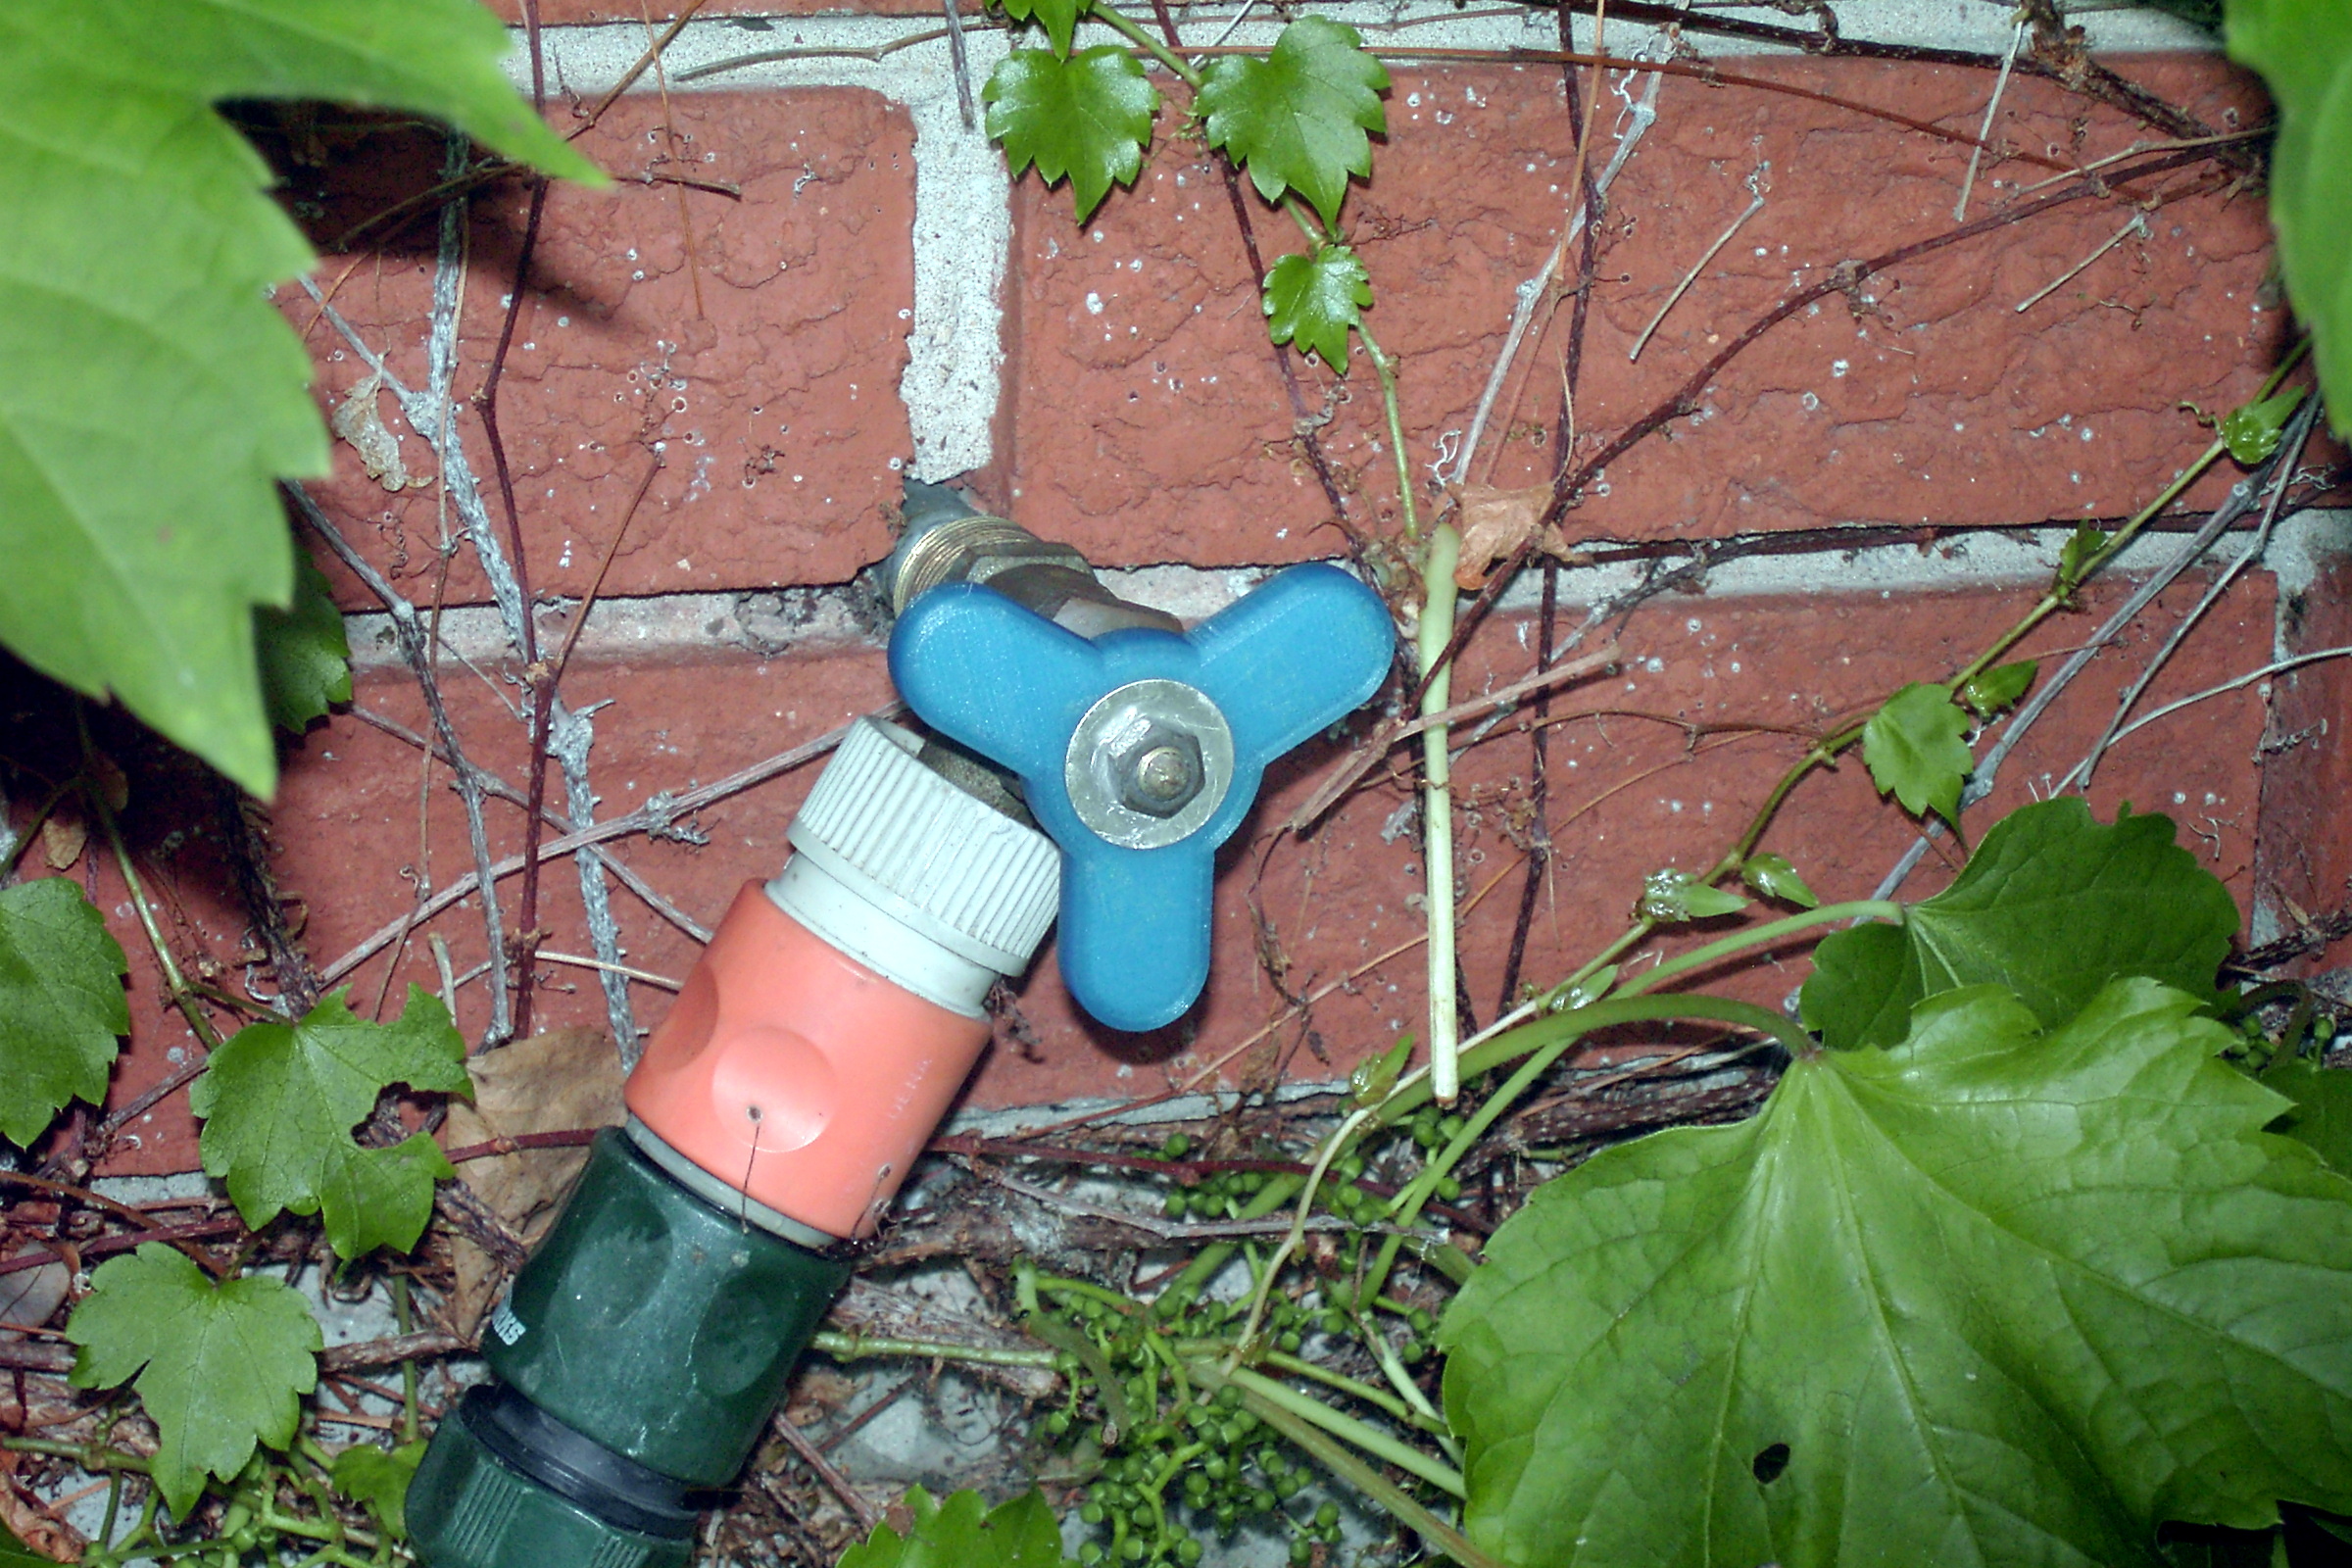 Garden hose valve tap handle